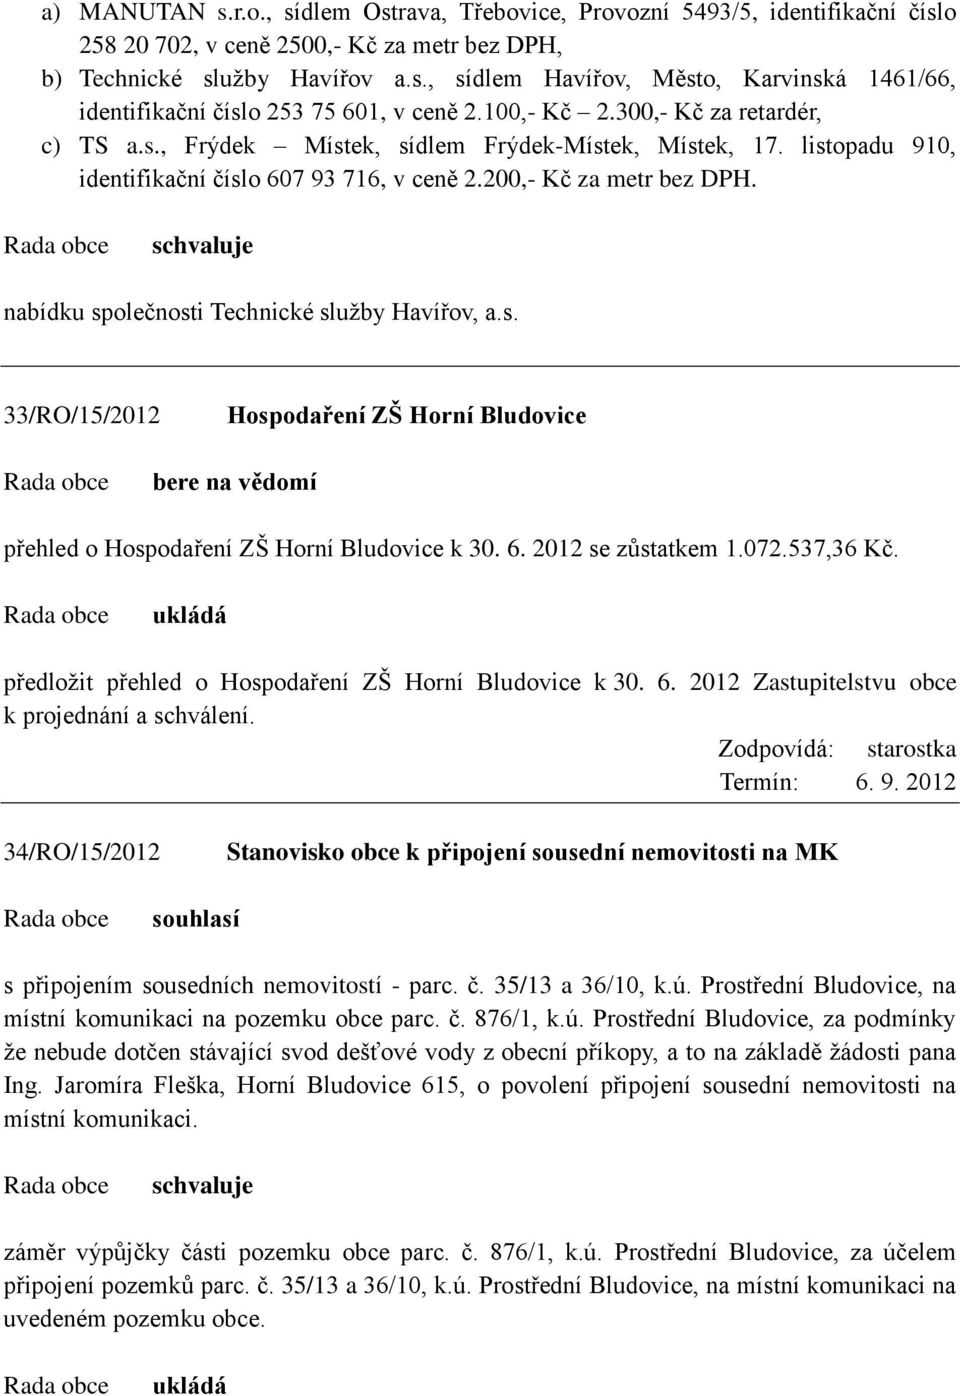 nabídku společnosti Technické služby Havířov, a.s. 33/RO/15/2012 Hospodaření ZŠ Horní Bludovice přehled o Hospodaření ZŠ Horní Bludovice k 30. 6. 2012 se zůstatkem 1.072.537,36 Kč.